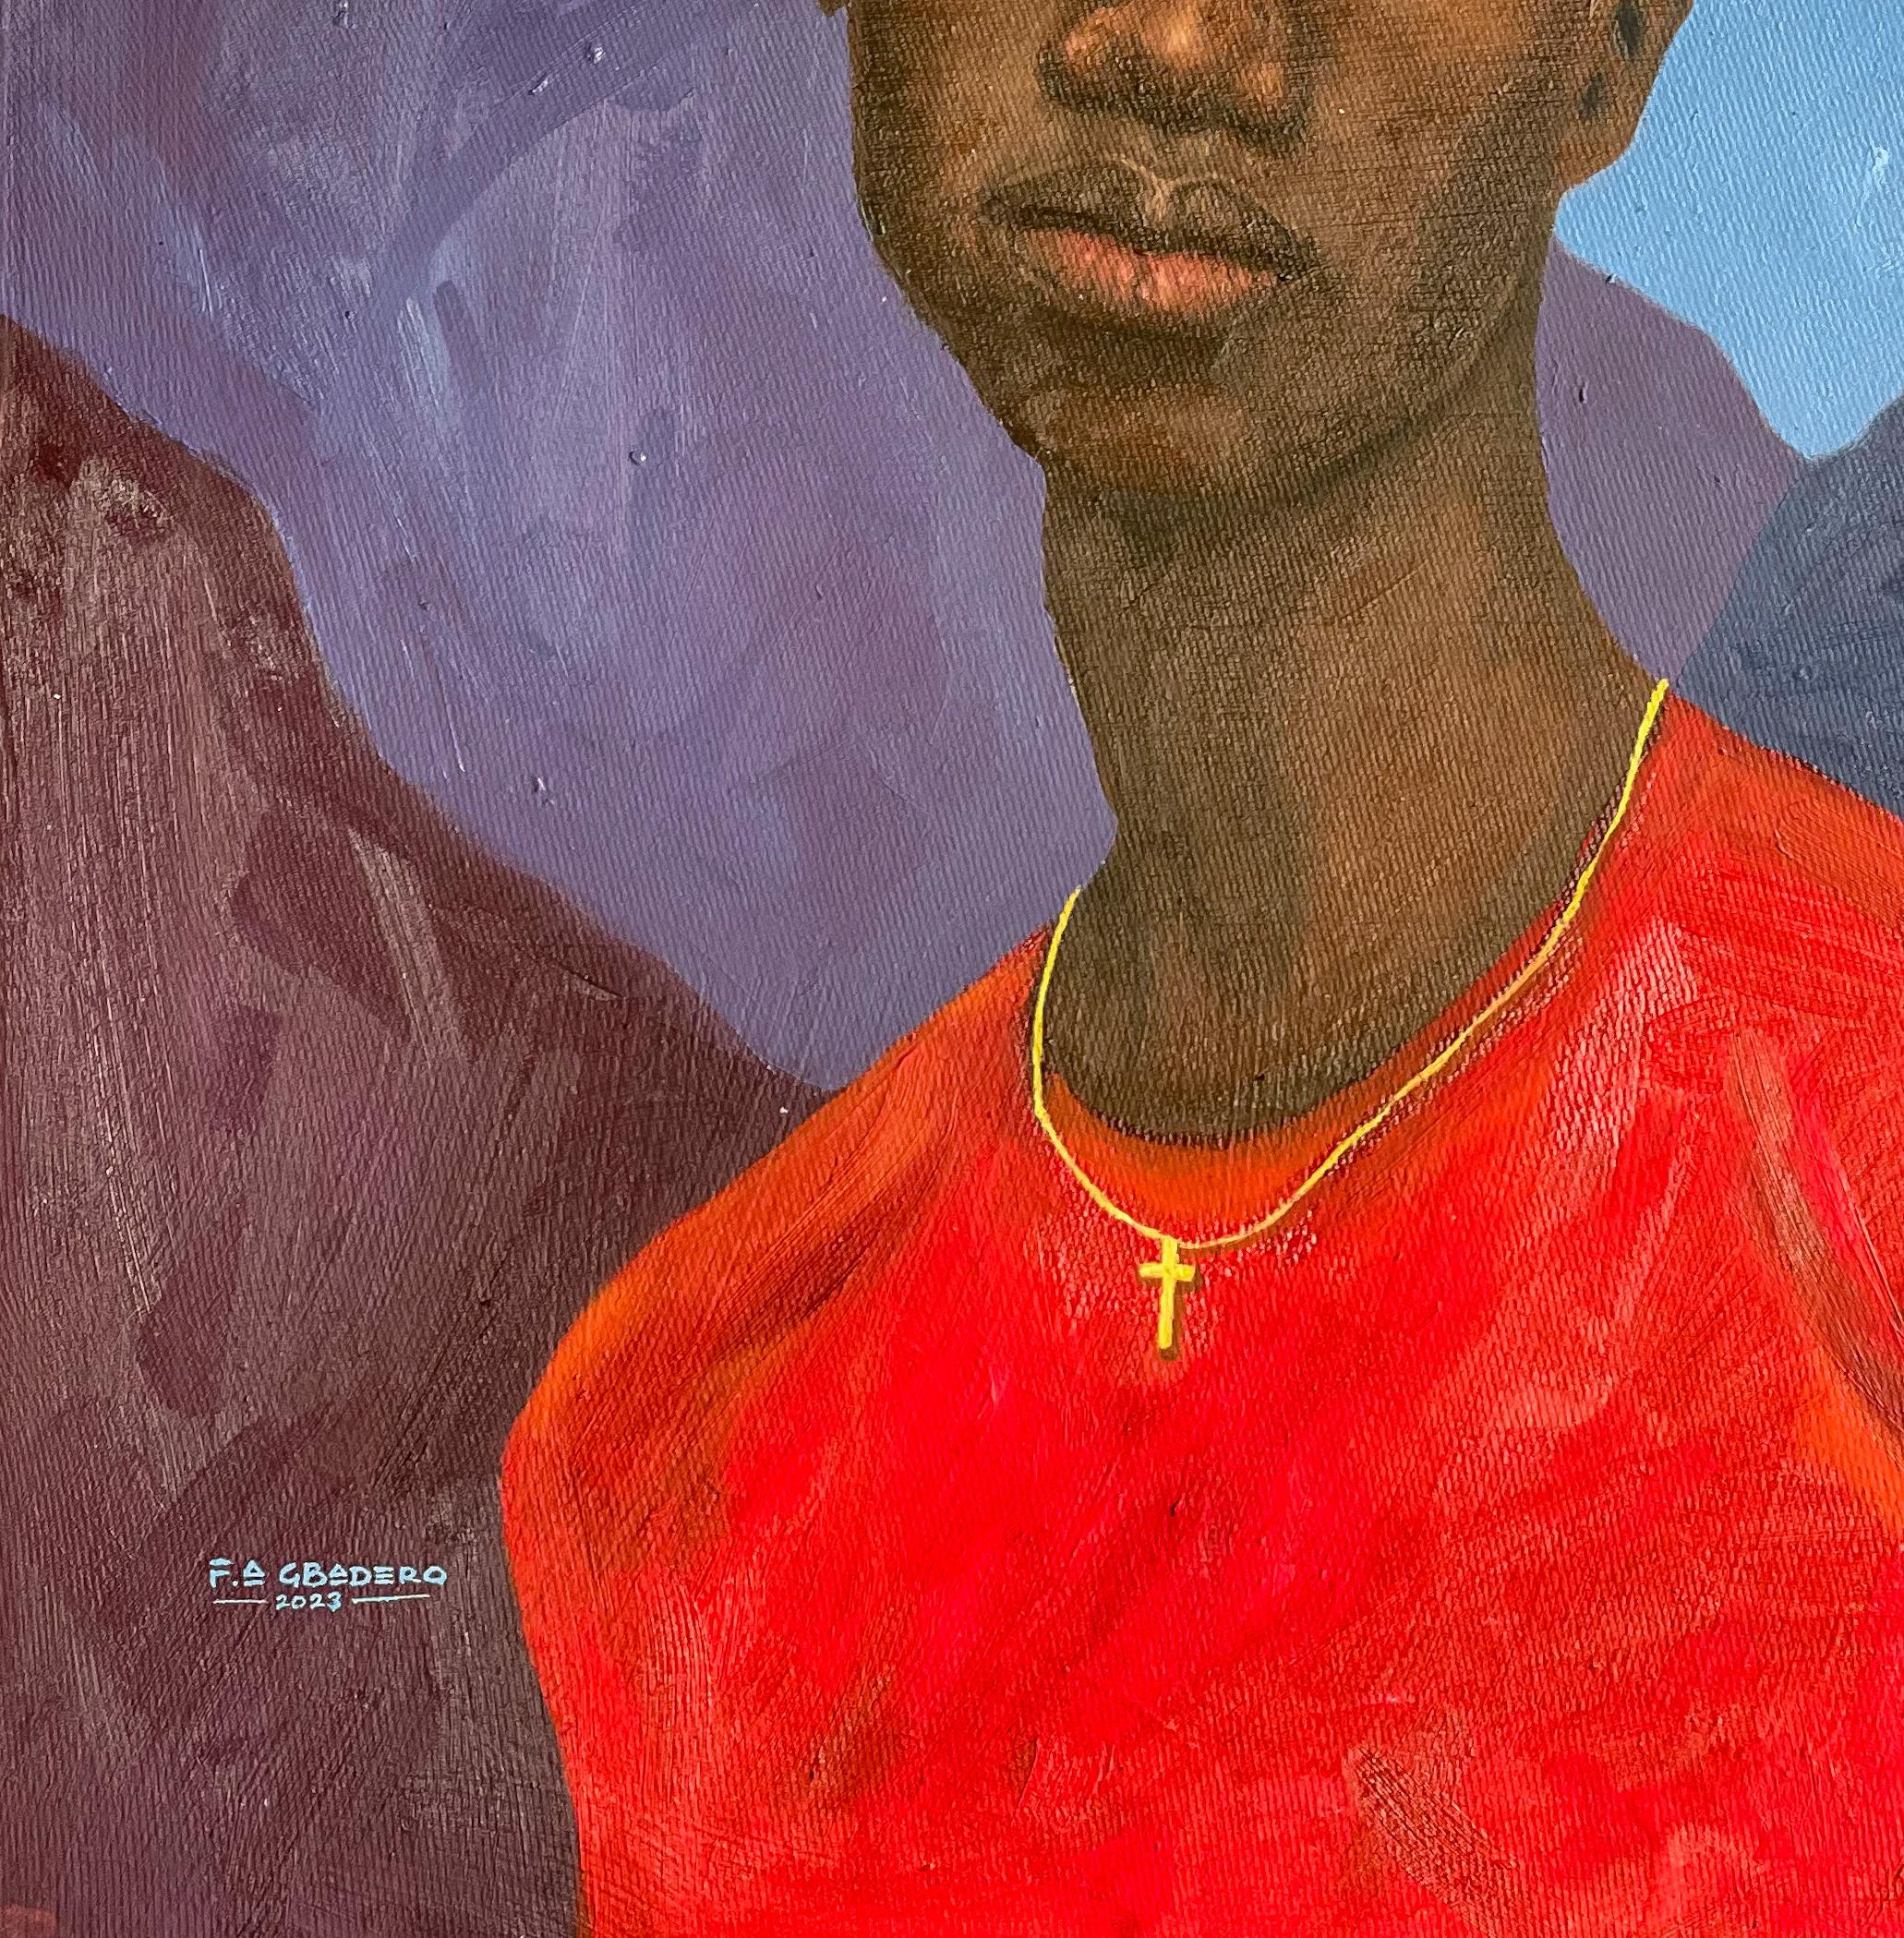 African Boy ist eine Serie von Bildern der talentierten Künstlerin Faith Gbadero. Diese Serie von Kunstwerken fängt die Reaktionen und Haltungen afrikanischer junger Erwachsener auf die Kämpfe und die Achterbahn der Gefühle ein, die sie durchleben.